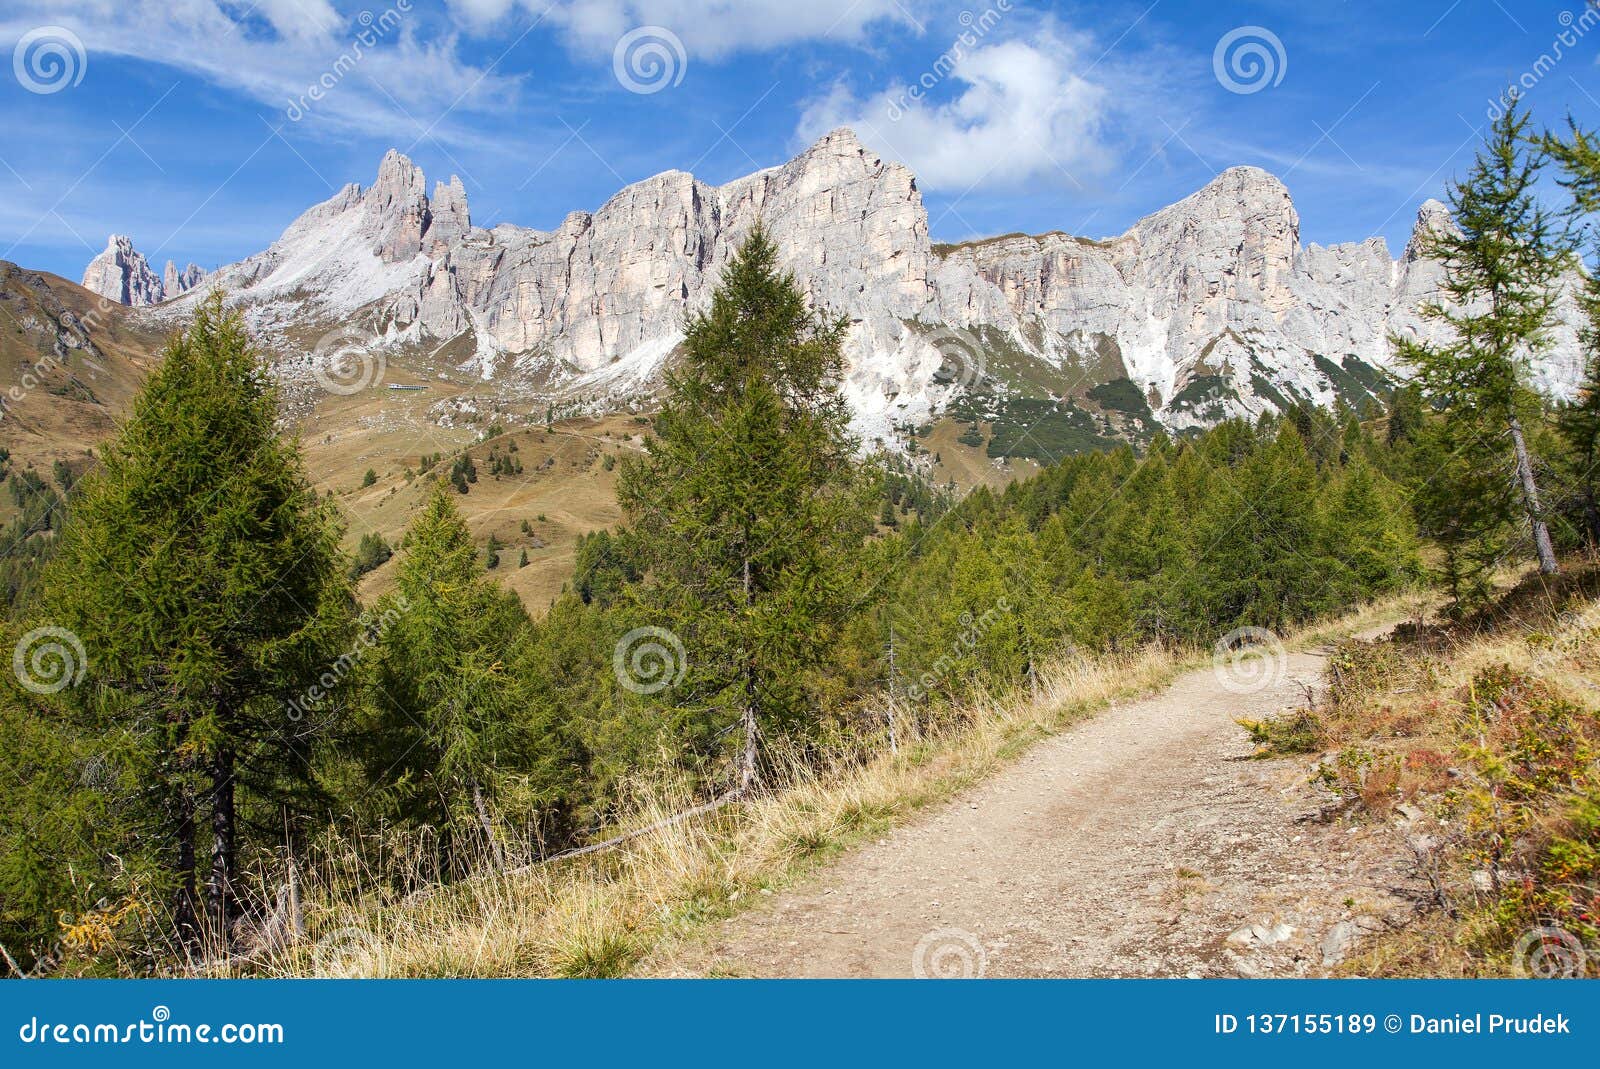 becco di mezzodi and rocheta, mountains in italia